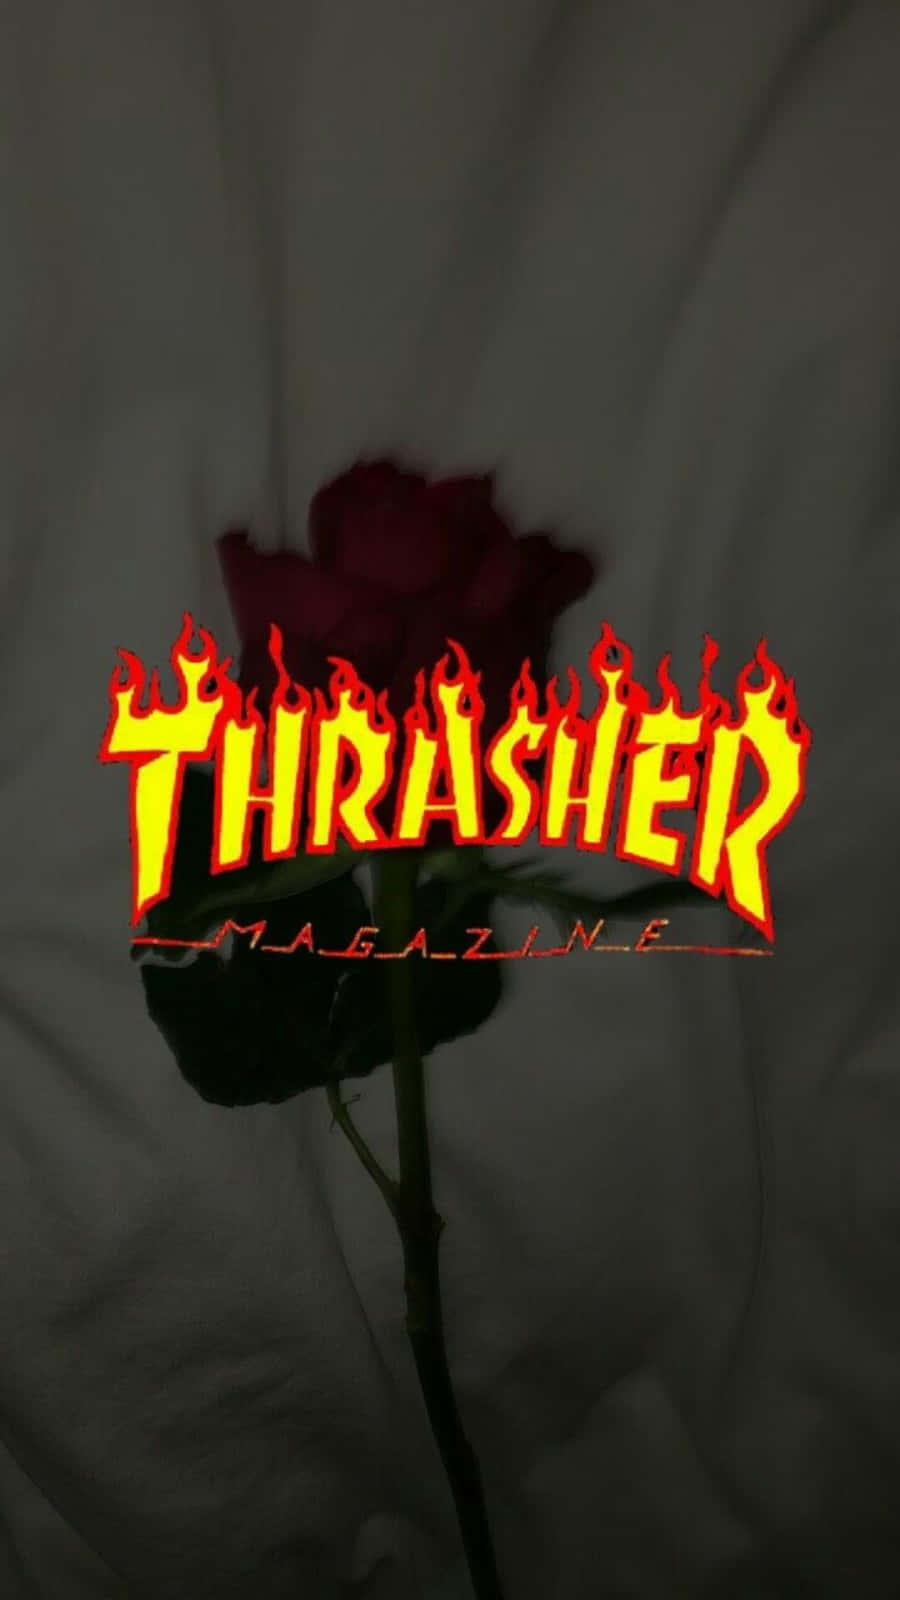 Revistathrasher - Thrasher - Thrasher - Thrasher - Thrasher -